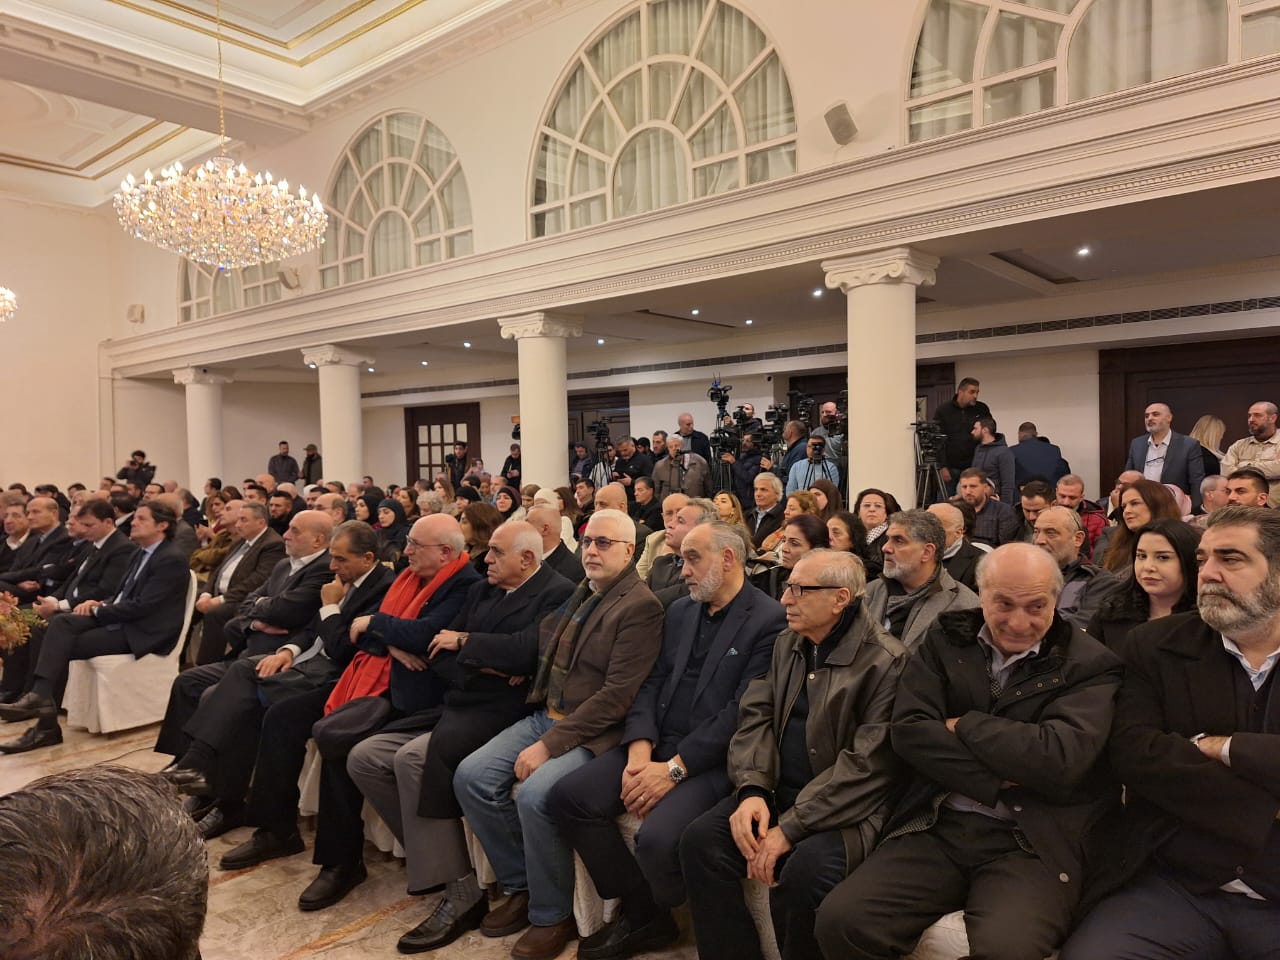 بالصور.. الحفل التكريمي الذي أقامته العلاقات الإعلامية في حزب الله بعنوان "إعلاميّون على طريق القدس"